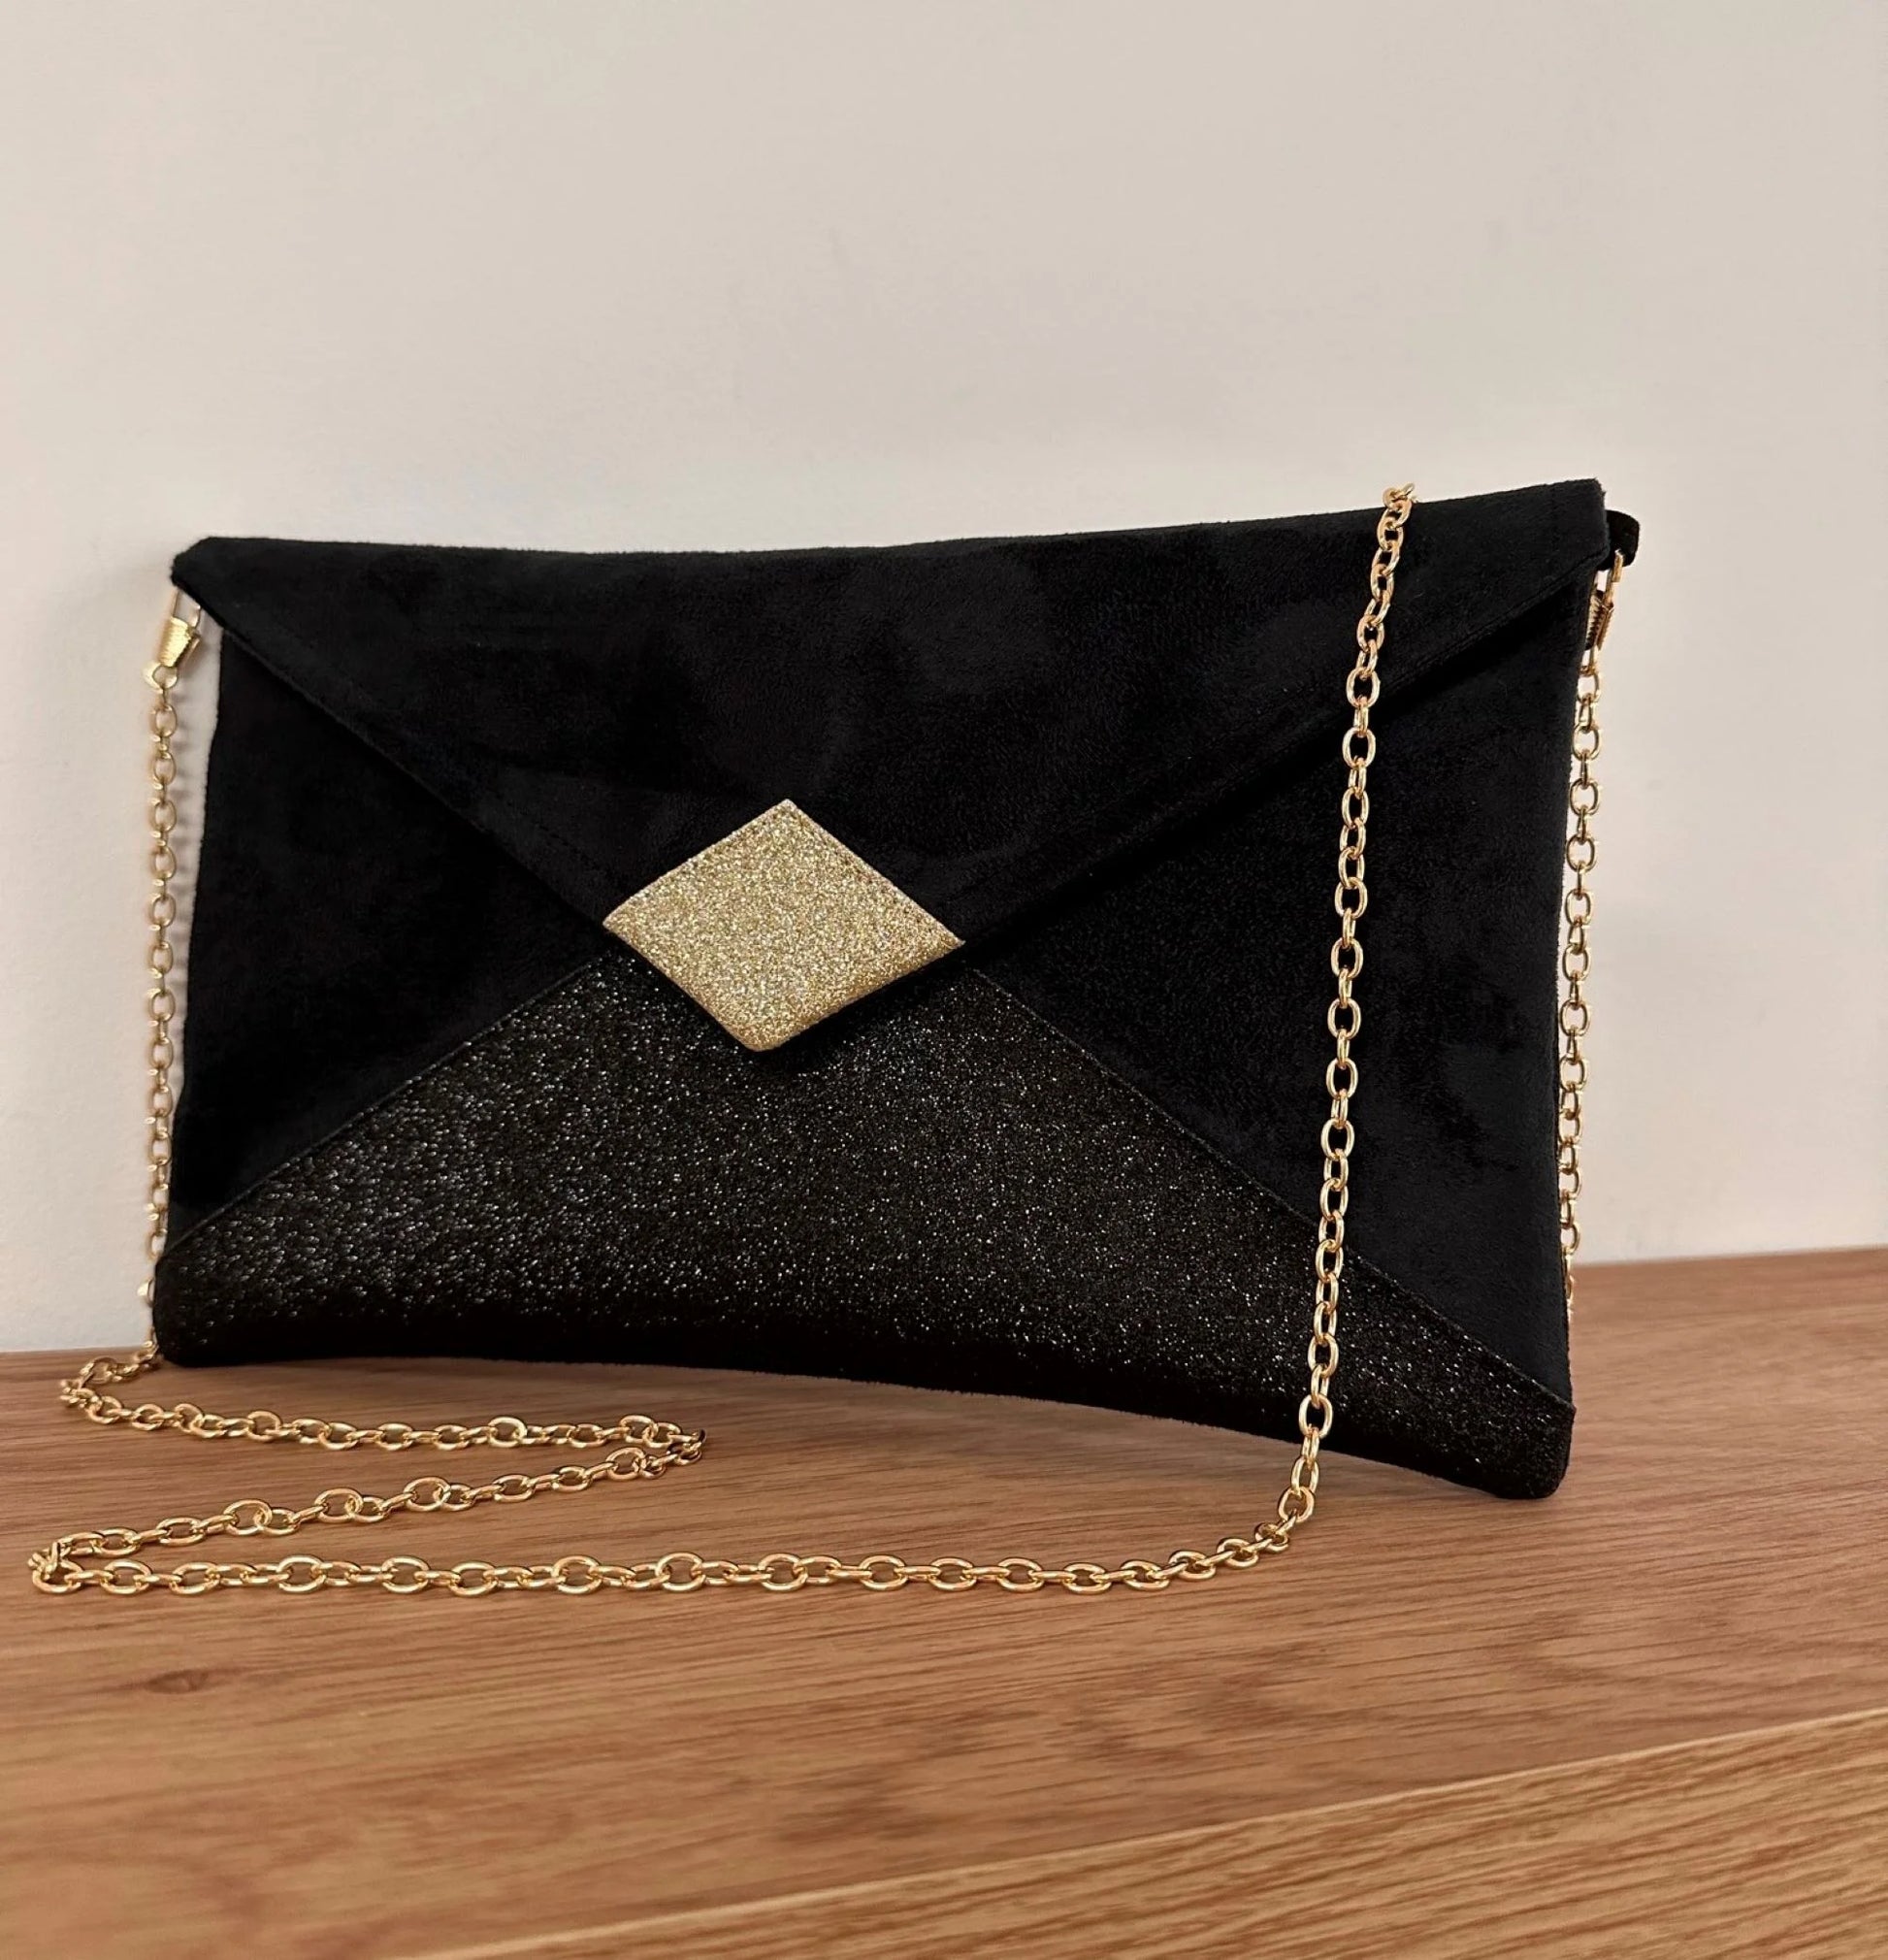 Le sac pochette Isa noir et doré à paillettes, avec sa chainette amovible.